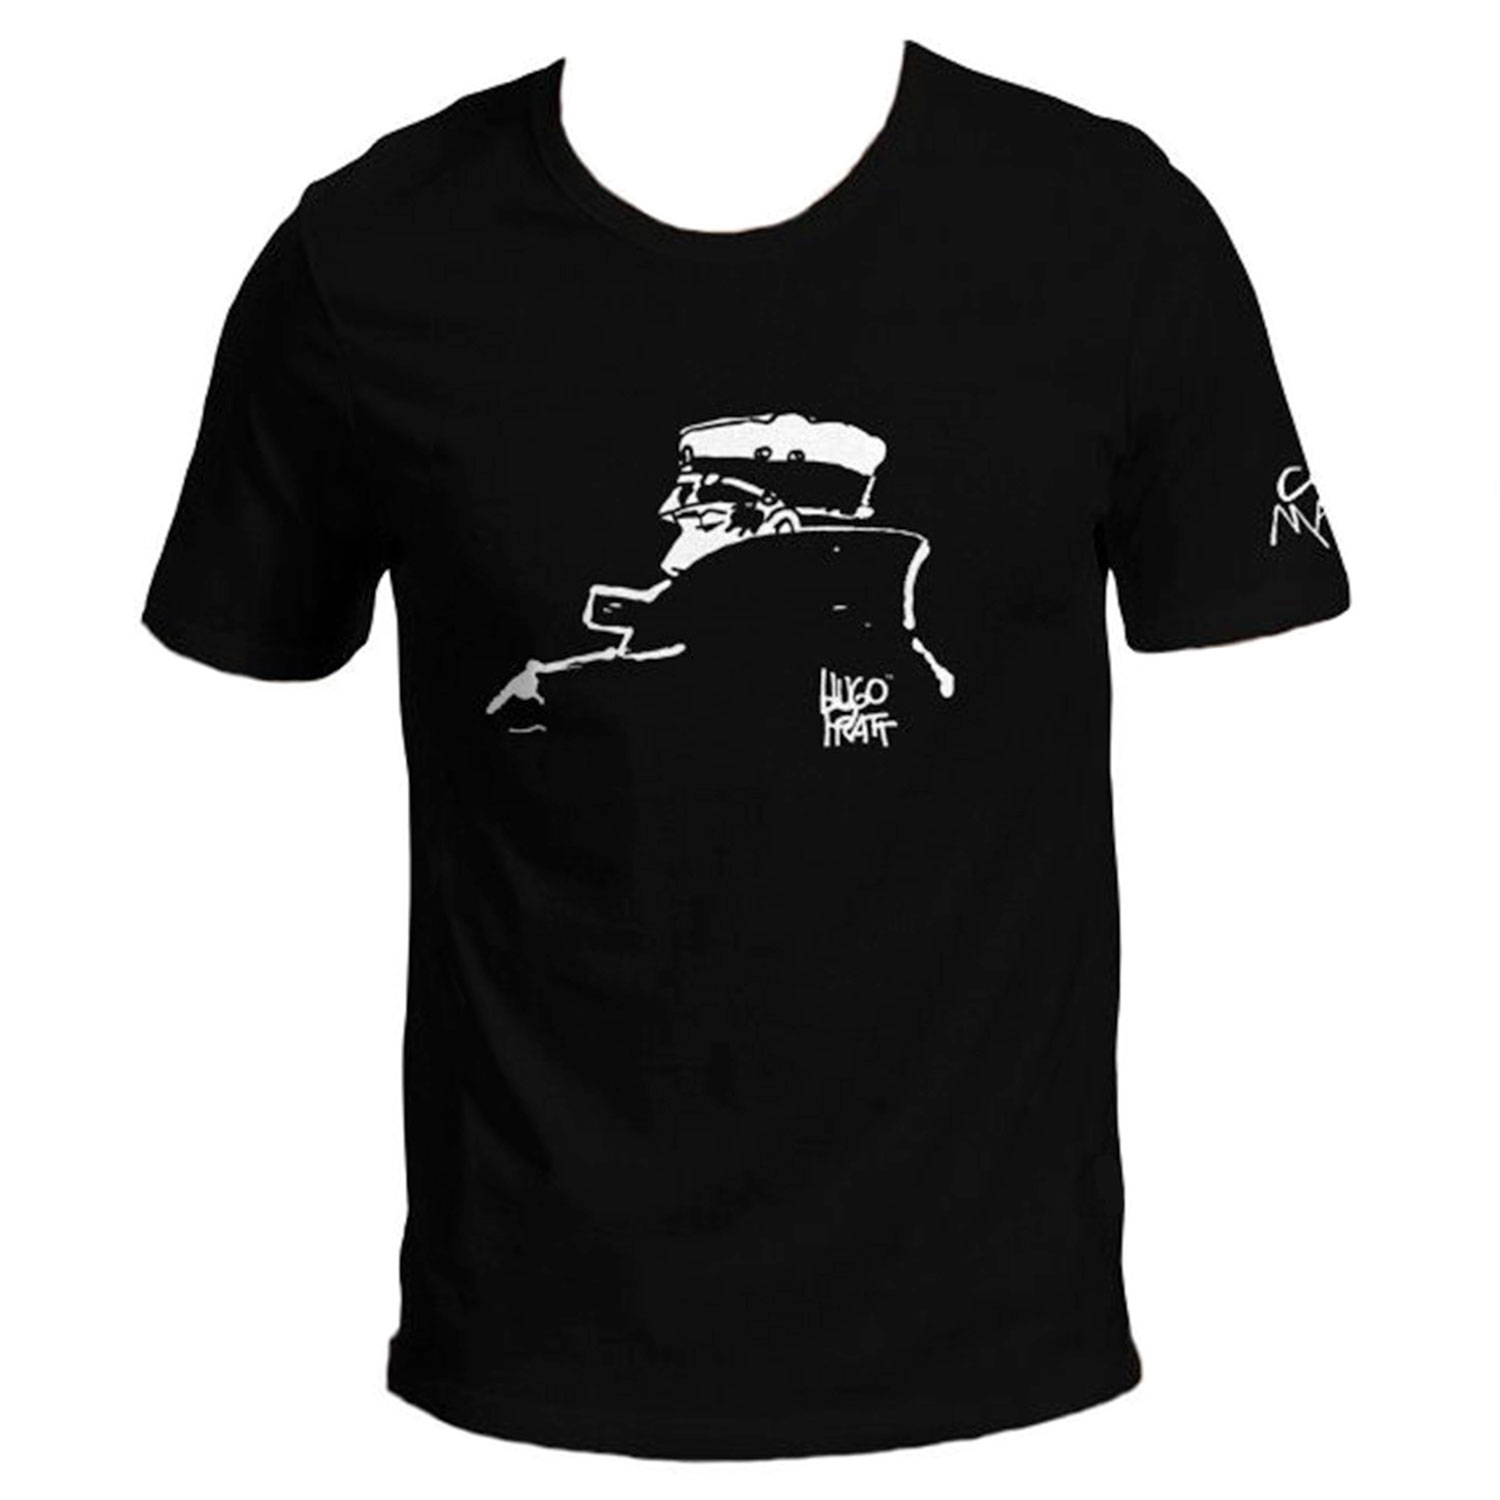 T-shirt Hugo Pratt :  Corto Maltese , Nocturne - Noir - Taille M